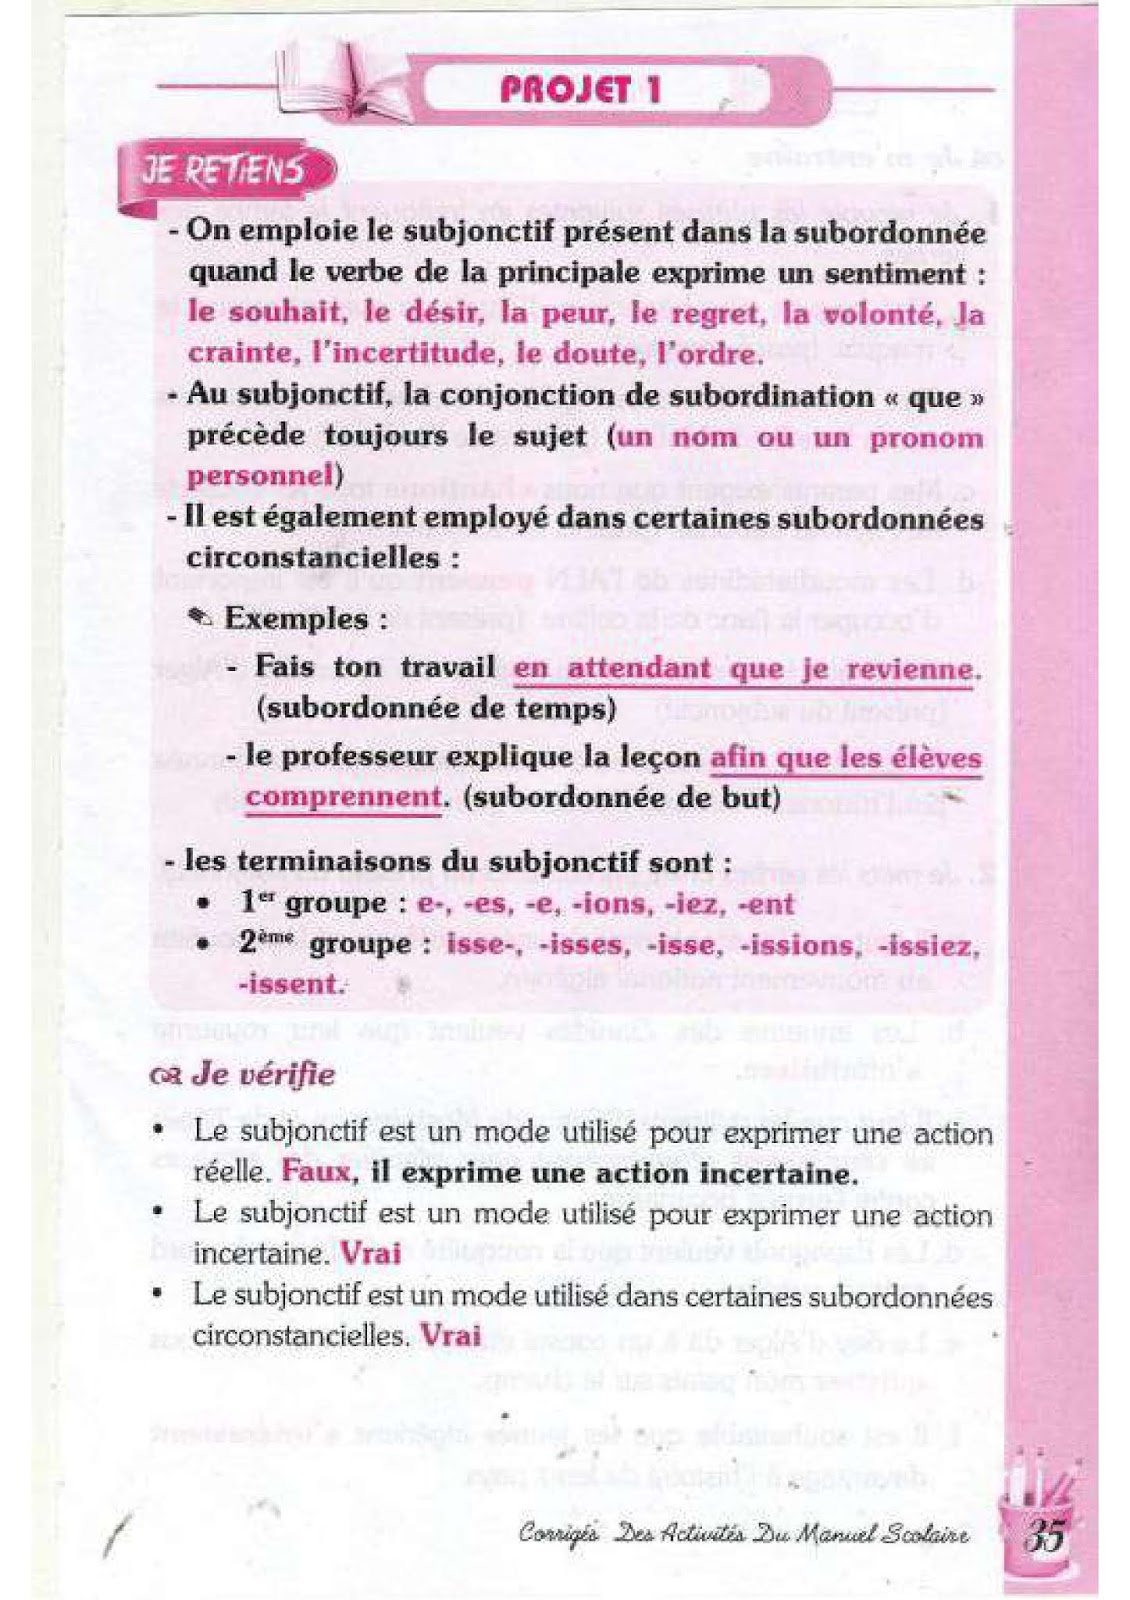 حل تمارين صفحة 34 الفرنسية للسنة الرابعة متوسط - الجيل الثاني